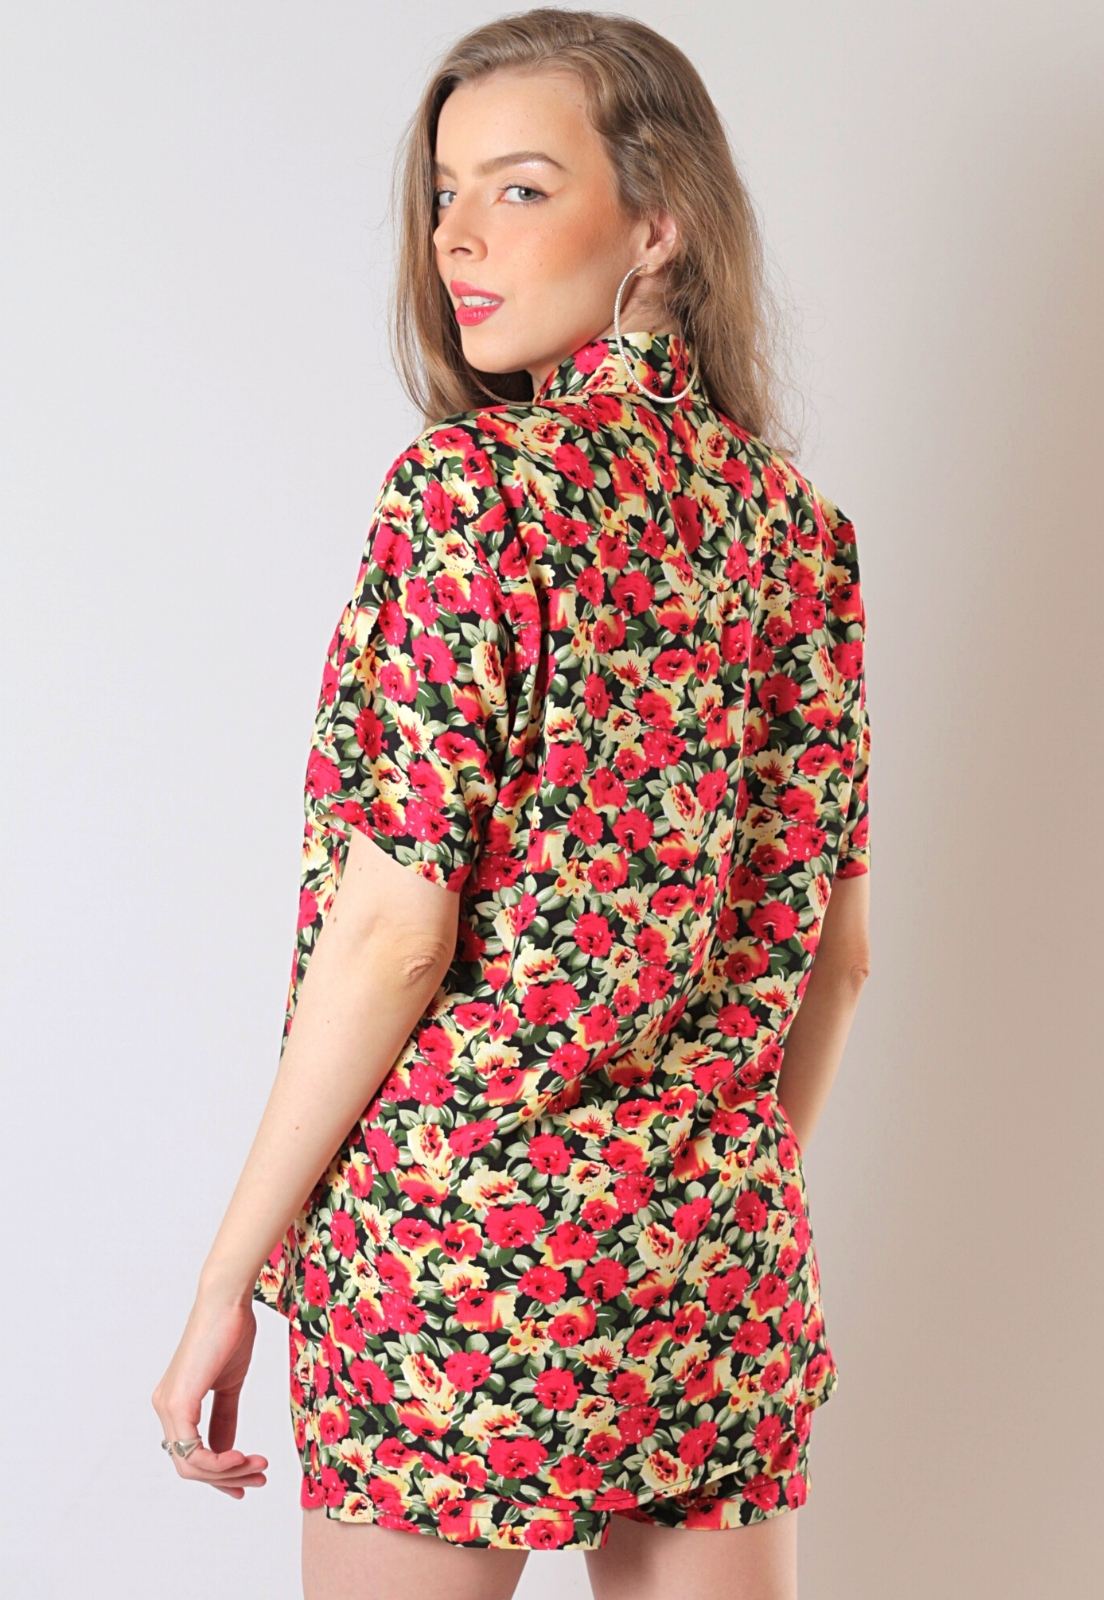 Conjunto Estampado Floral Camisa + Shorts Unissex Florido Rojo Preto